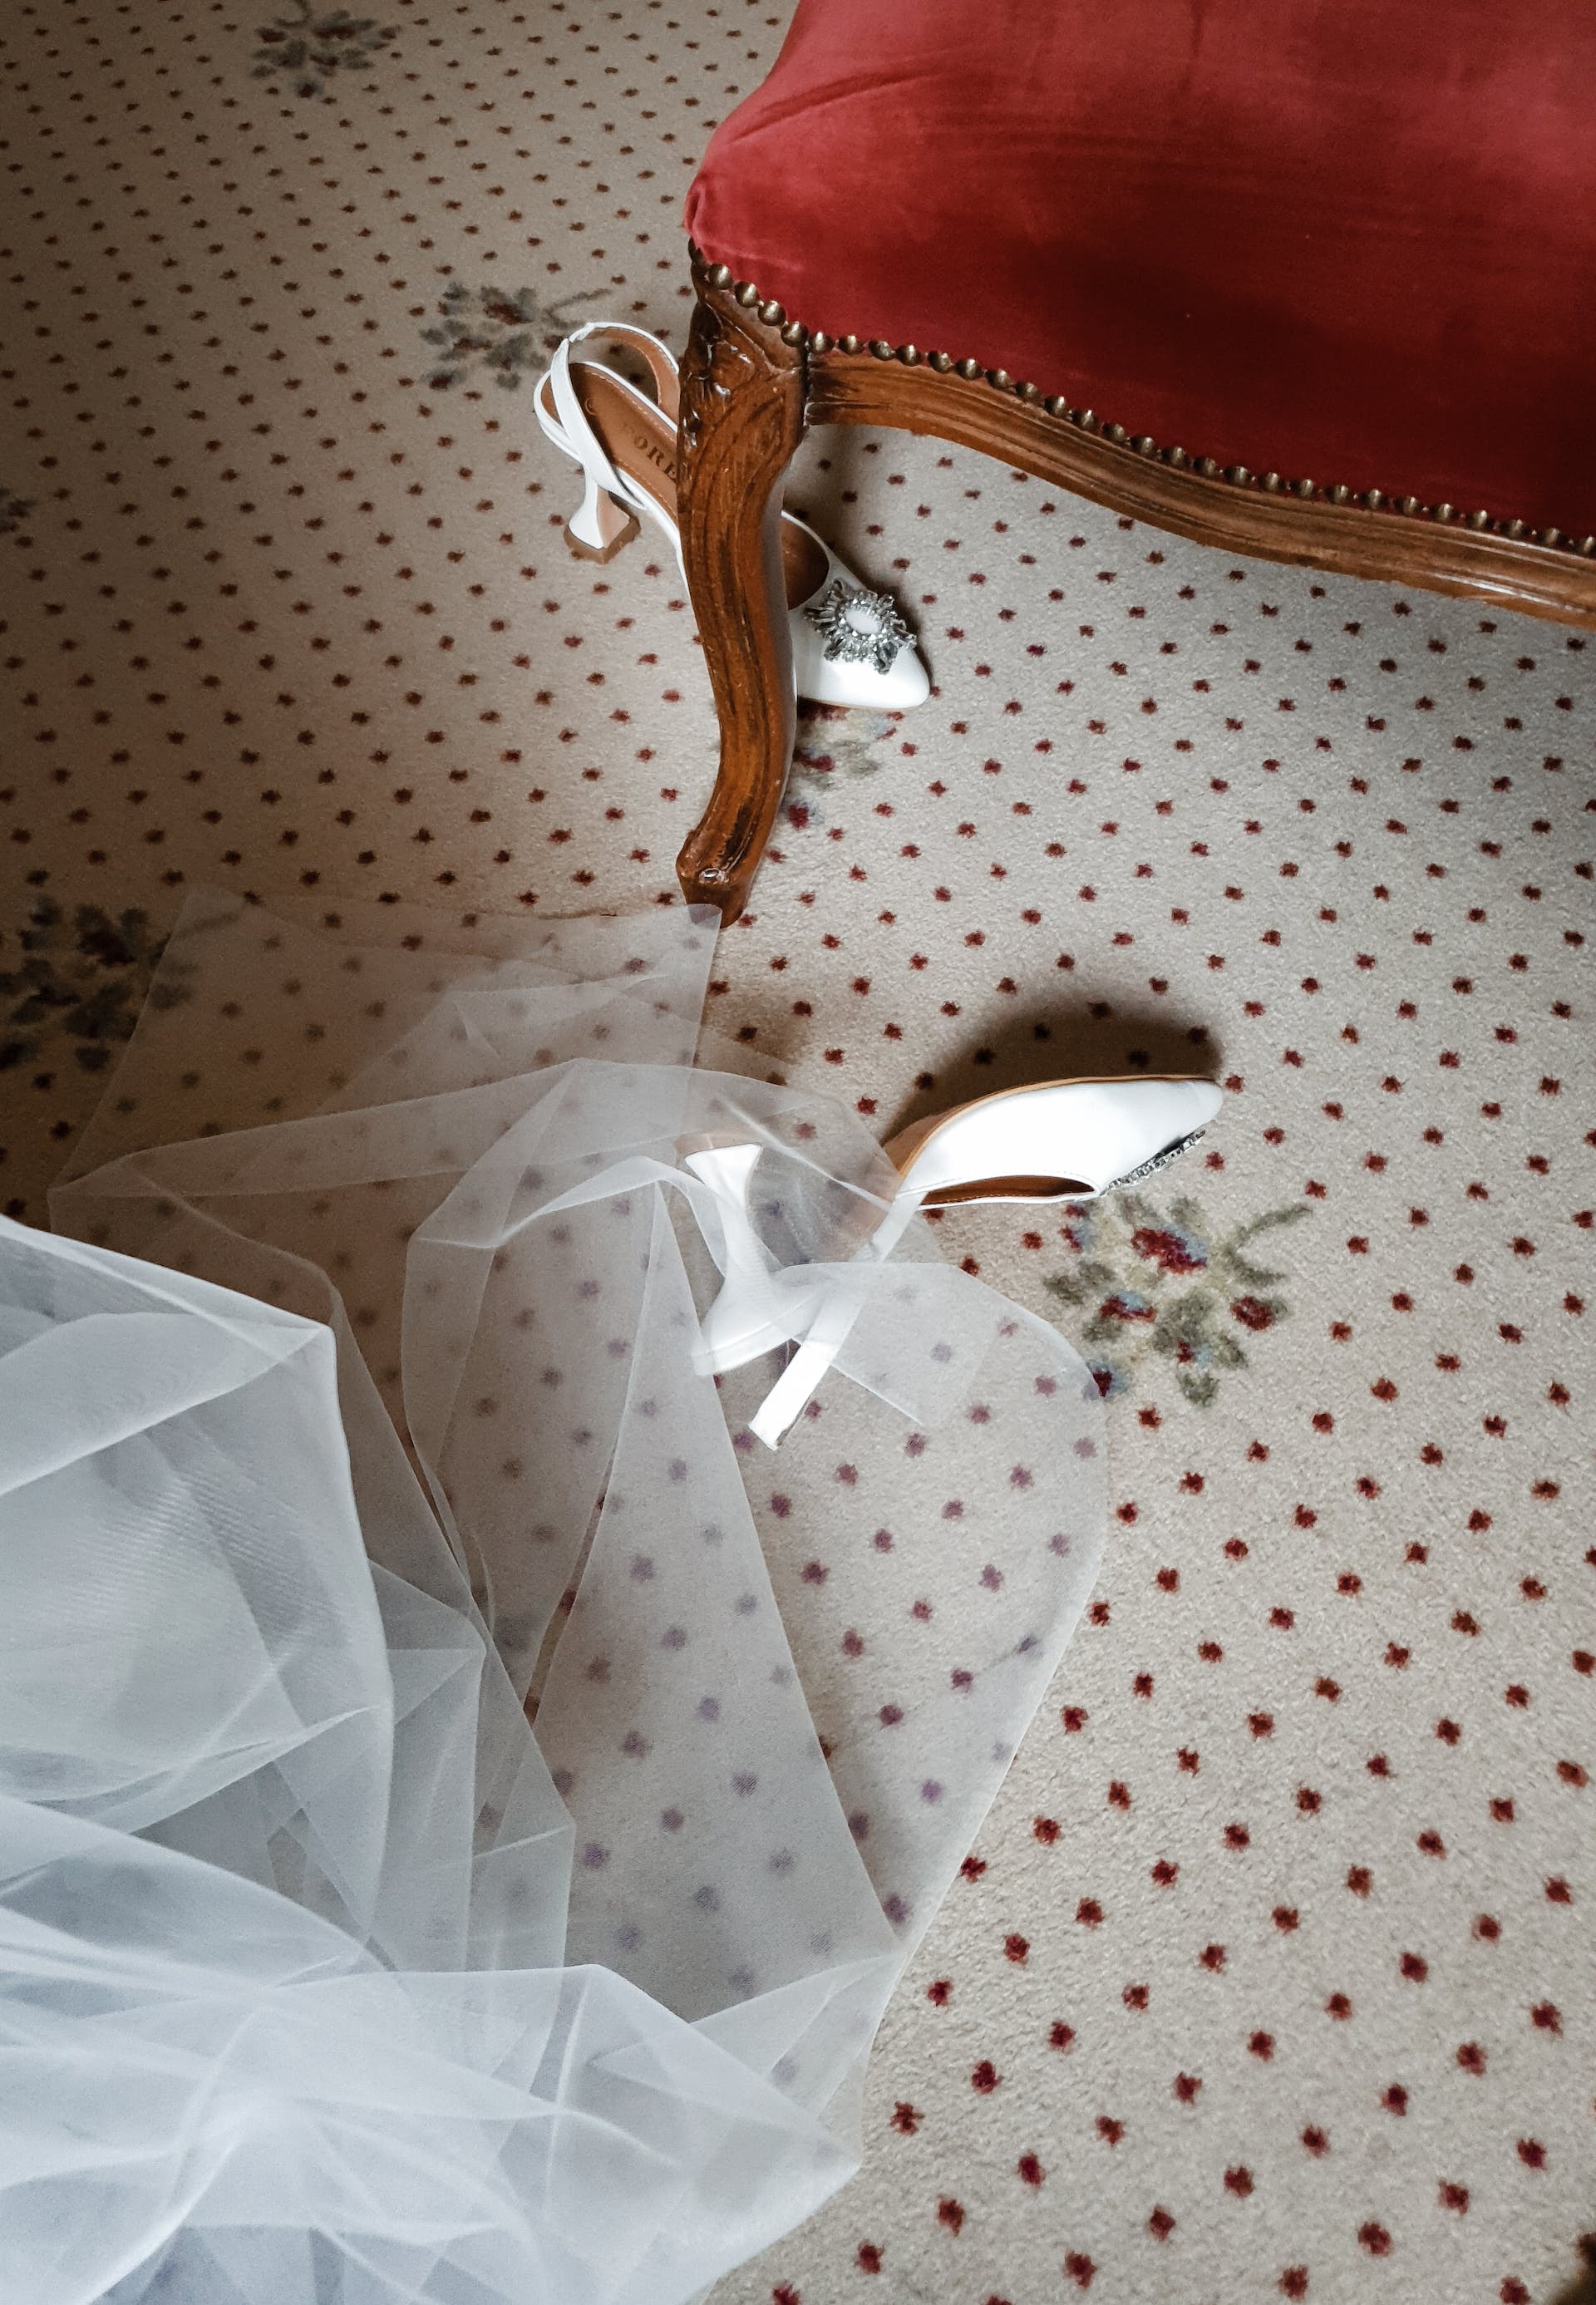 Vestido y zapatos de novia en el suelo | Foto: Pexels